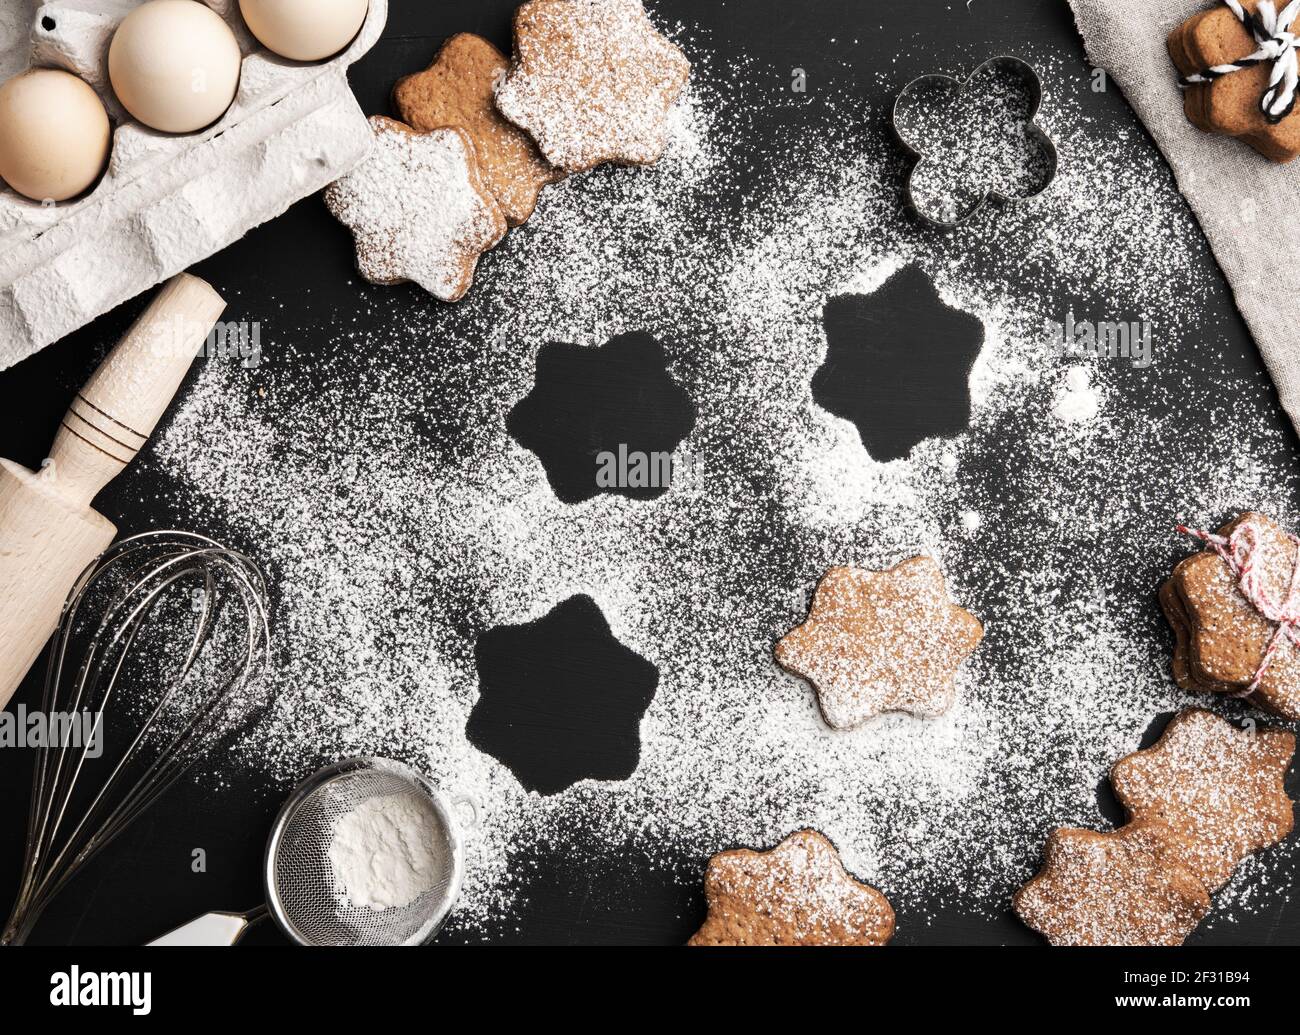 Biscuit au pain d'épice cuit en forme d'étoile arrosé de sucre en poudre sur un table noire et ingrédients Banque D'Images